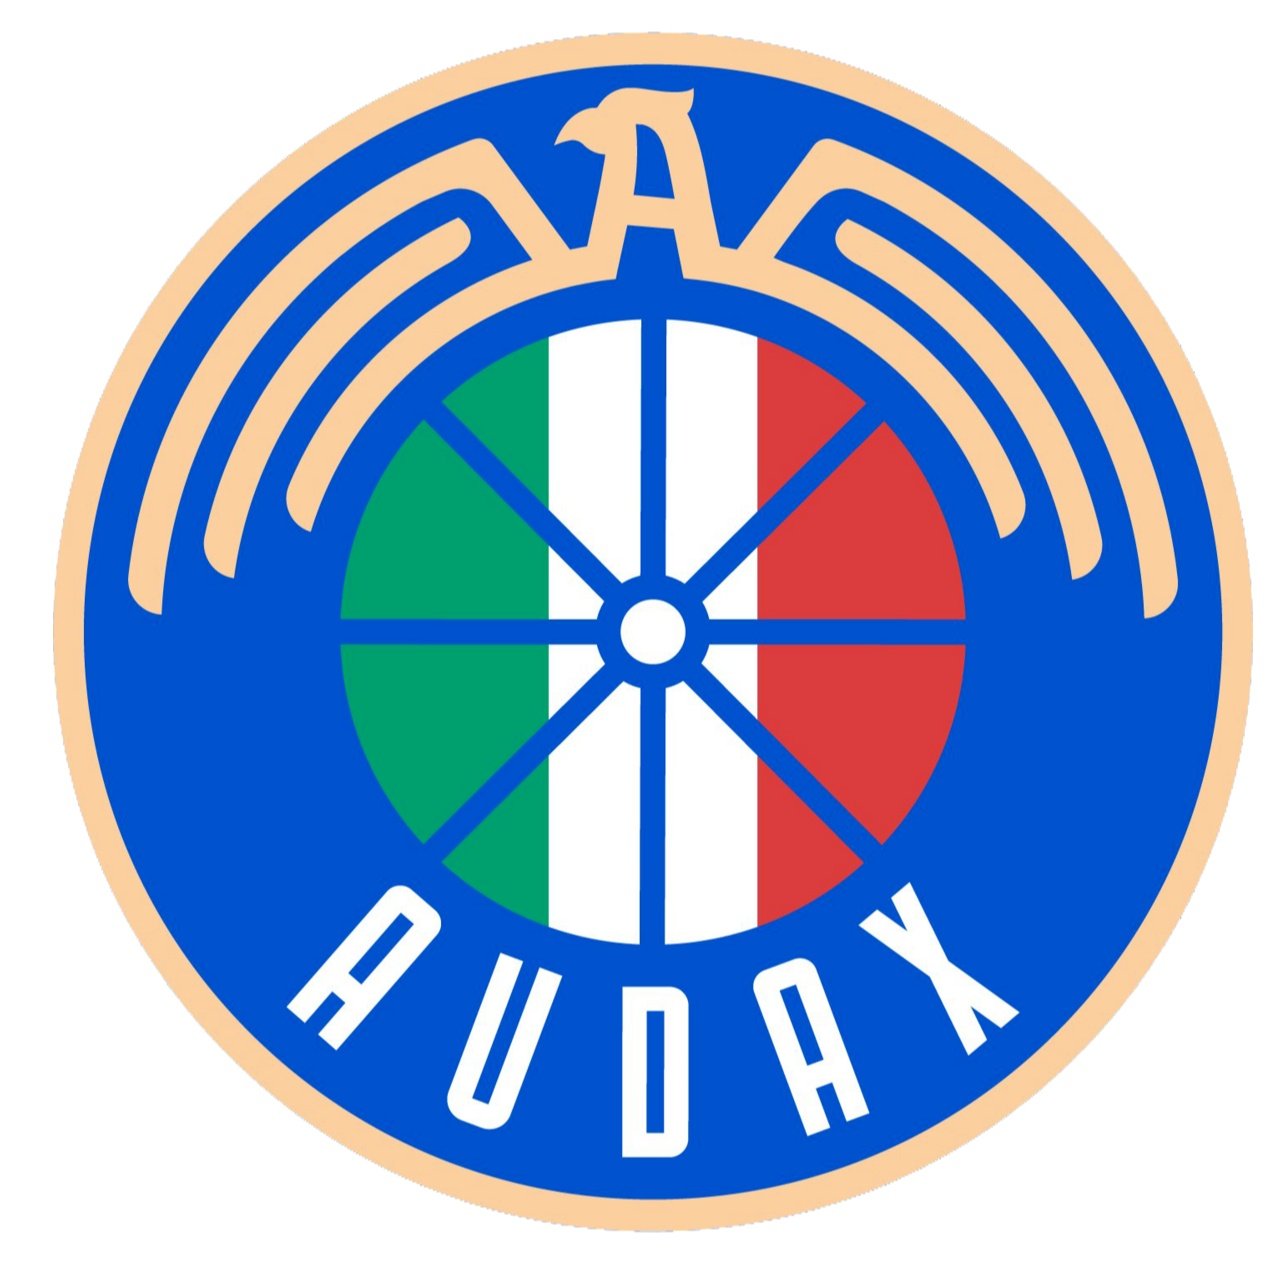 Escudo del Audax Italiano